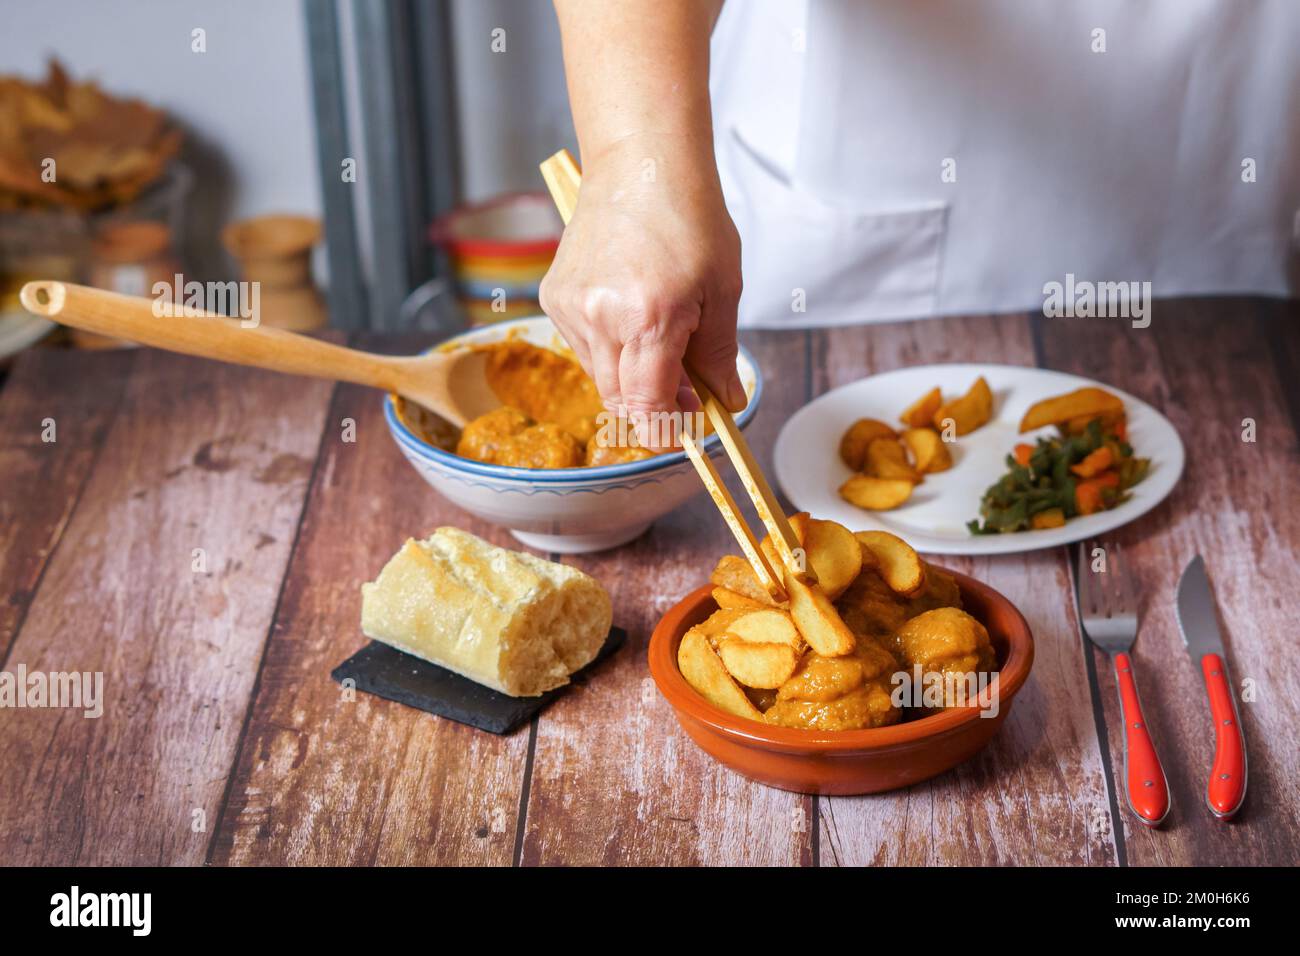 femme méconnaissable en tablier blanc servant des pommes de terre et des légumes sur une portion de boulettes de viande dans un plat en faïence Banque D'Images